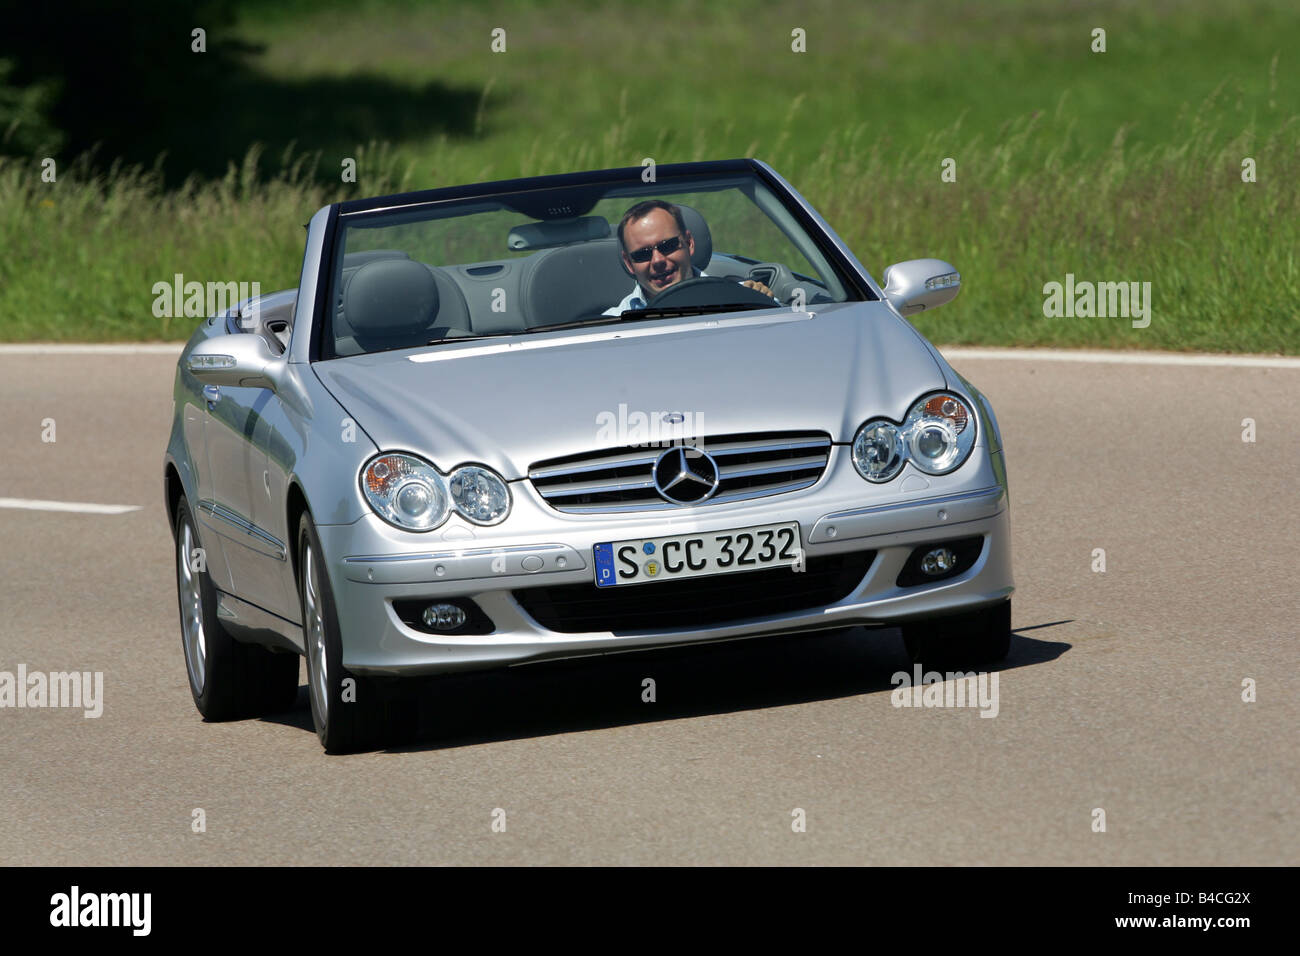 Mercedes CLK 320 CDI Cabrio, Modell Jahr 2005-Silber, fahren, schräg von vorne, Vorderansicht, open Top, Land ro Stockfoto